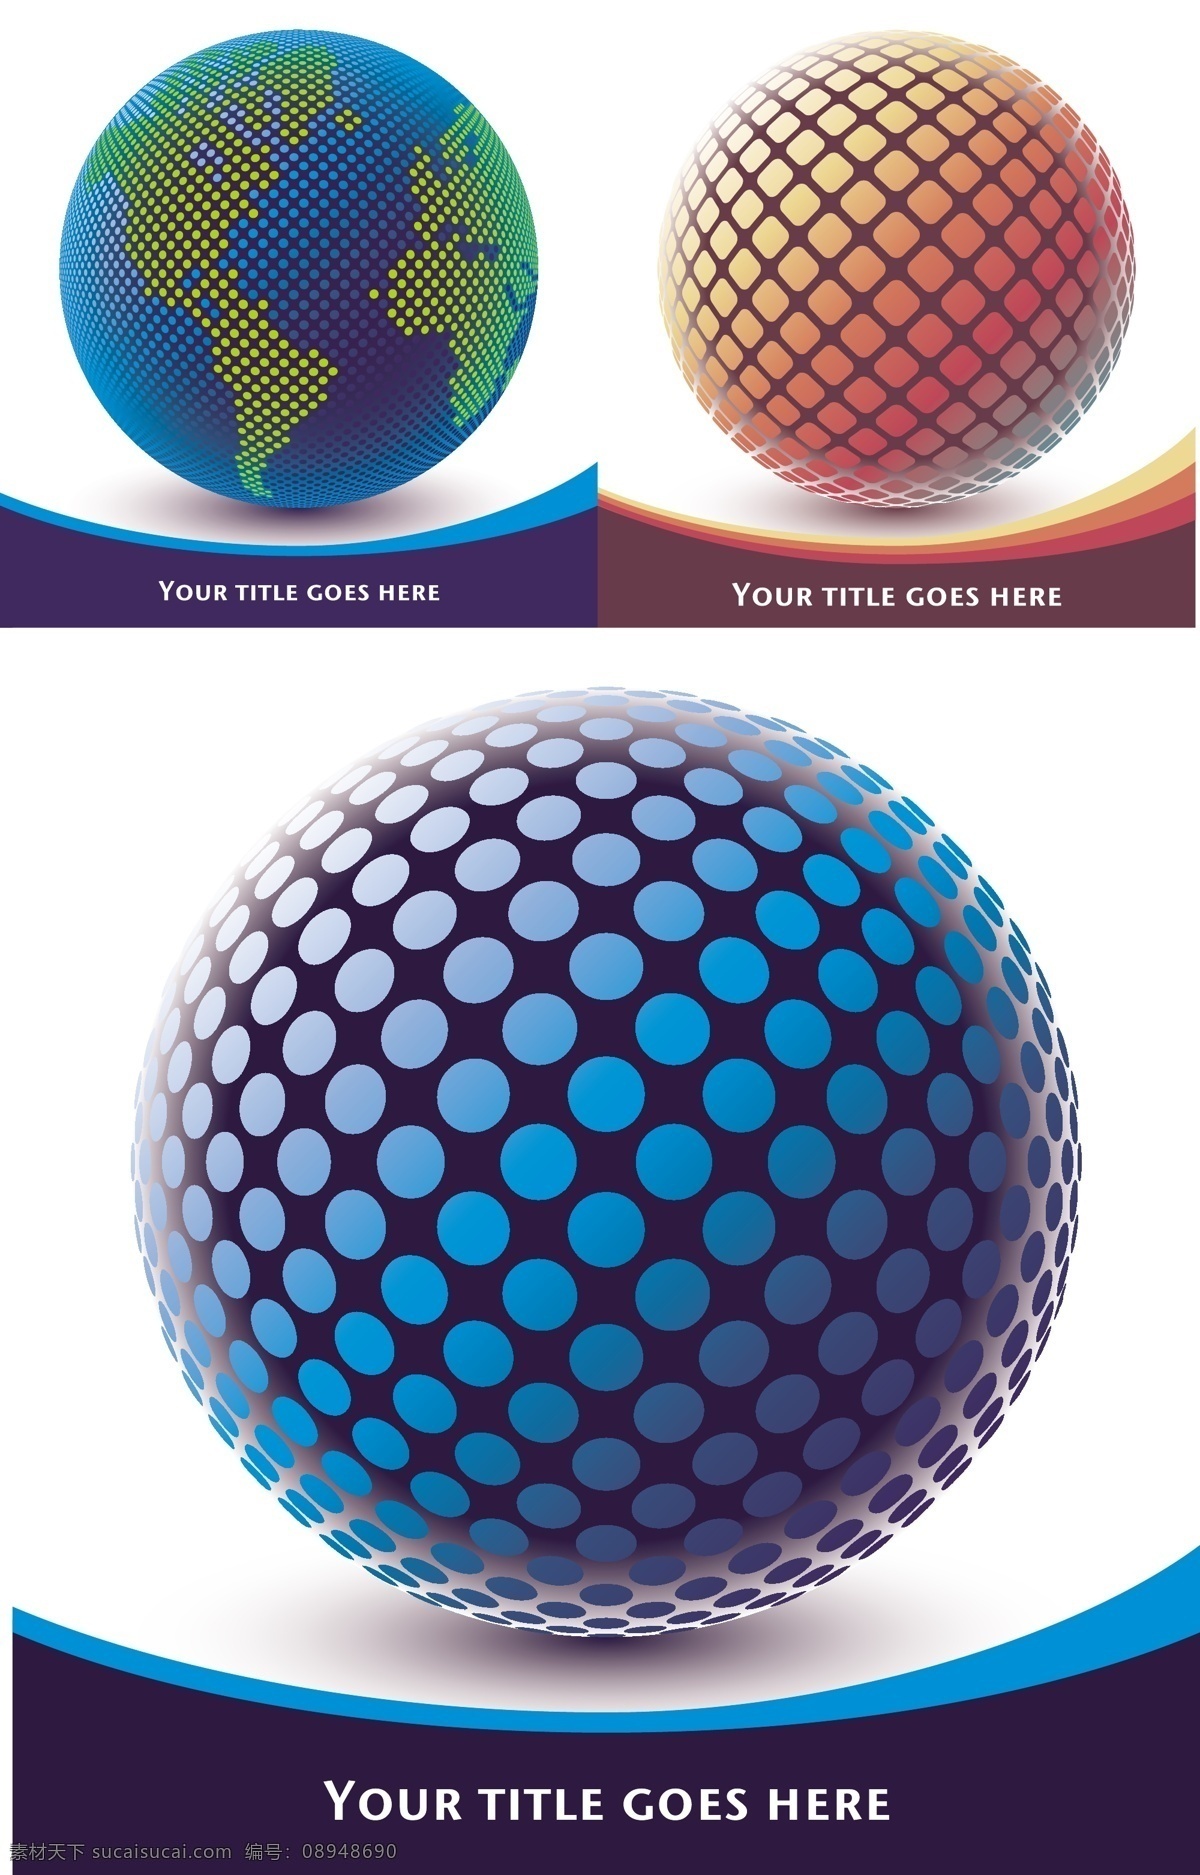 三维 球 矢量 三维球 圆球 球体 立体 圆点 动感 线条 曲线 矢量素材 其他矢量